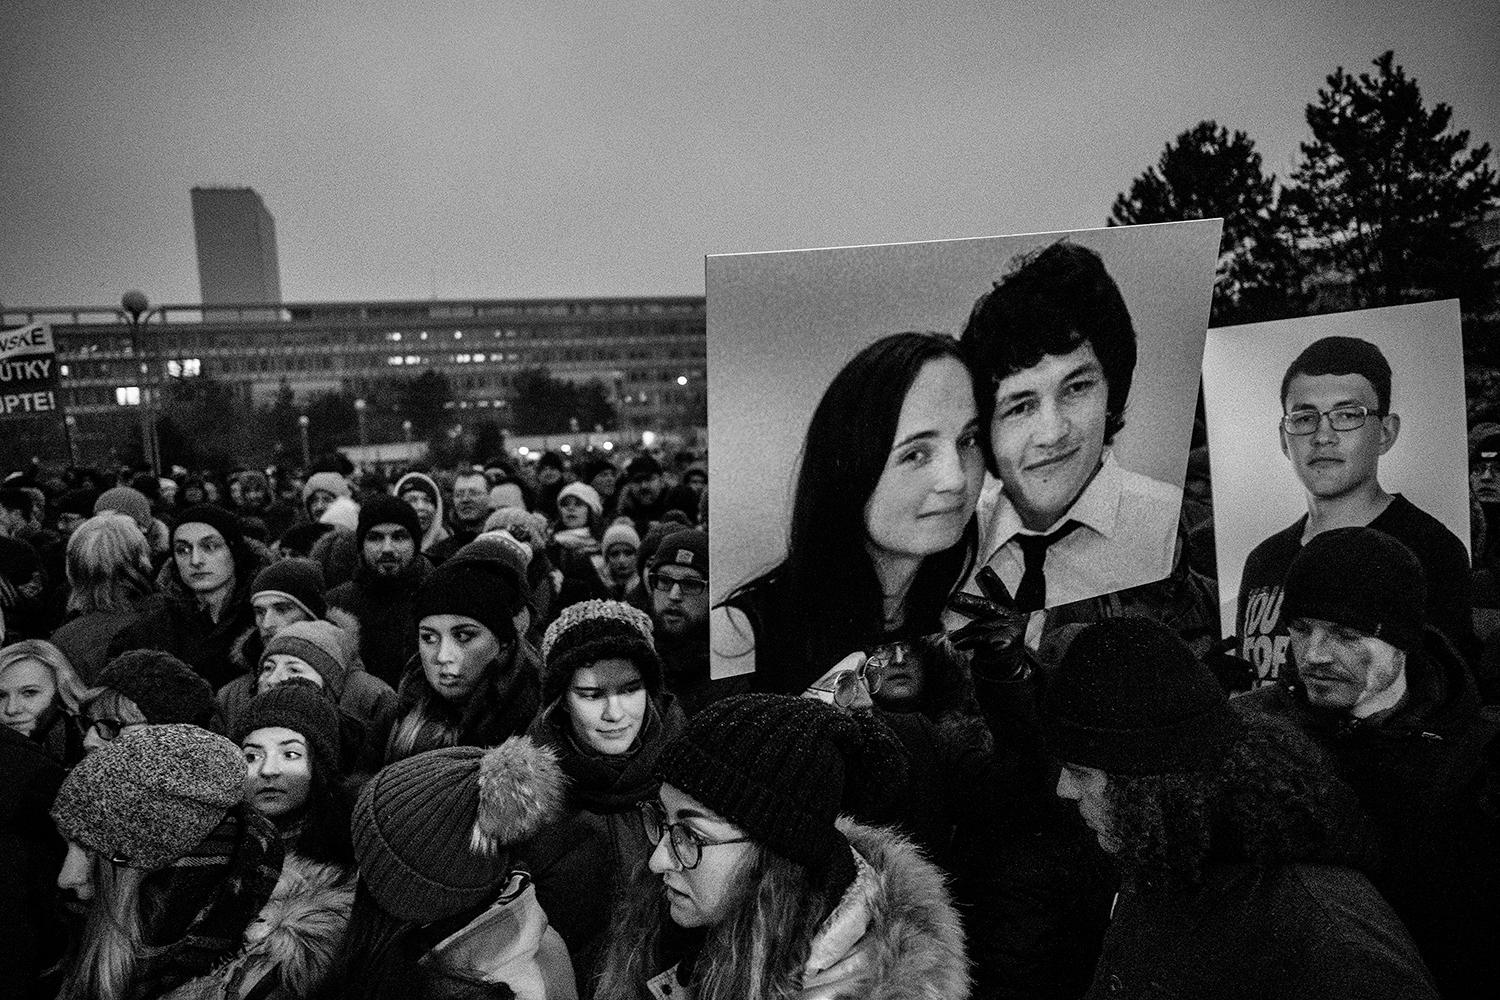 4. marec 2018, Bratislava: Protestný pochod Za slušné Slovensko, ktorý spontánne vznikol ako reakcia na vraždu novinára Jána Kuciaka a jeho snúbenice Martiny Kušnírovej. Do ulíc sa vydali desaťtisíce ľudí.